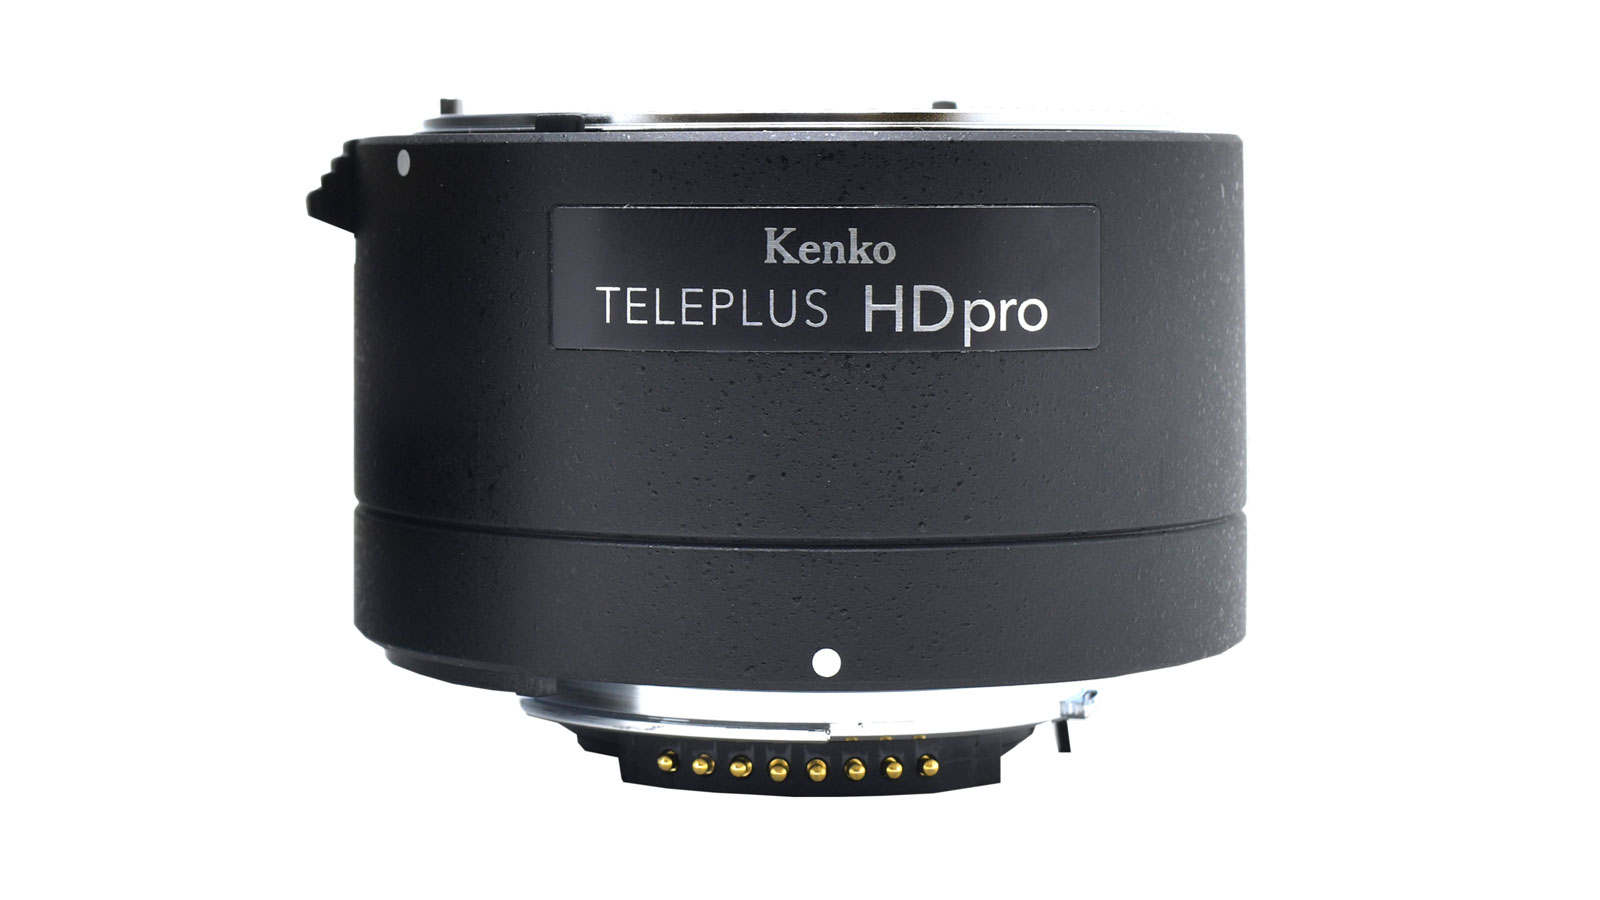 Kenko TELEPLUS HD pro 2x DGX (height 4cm approx.)